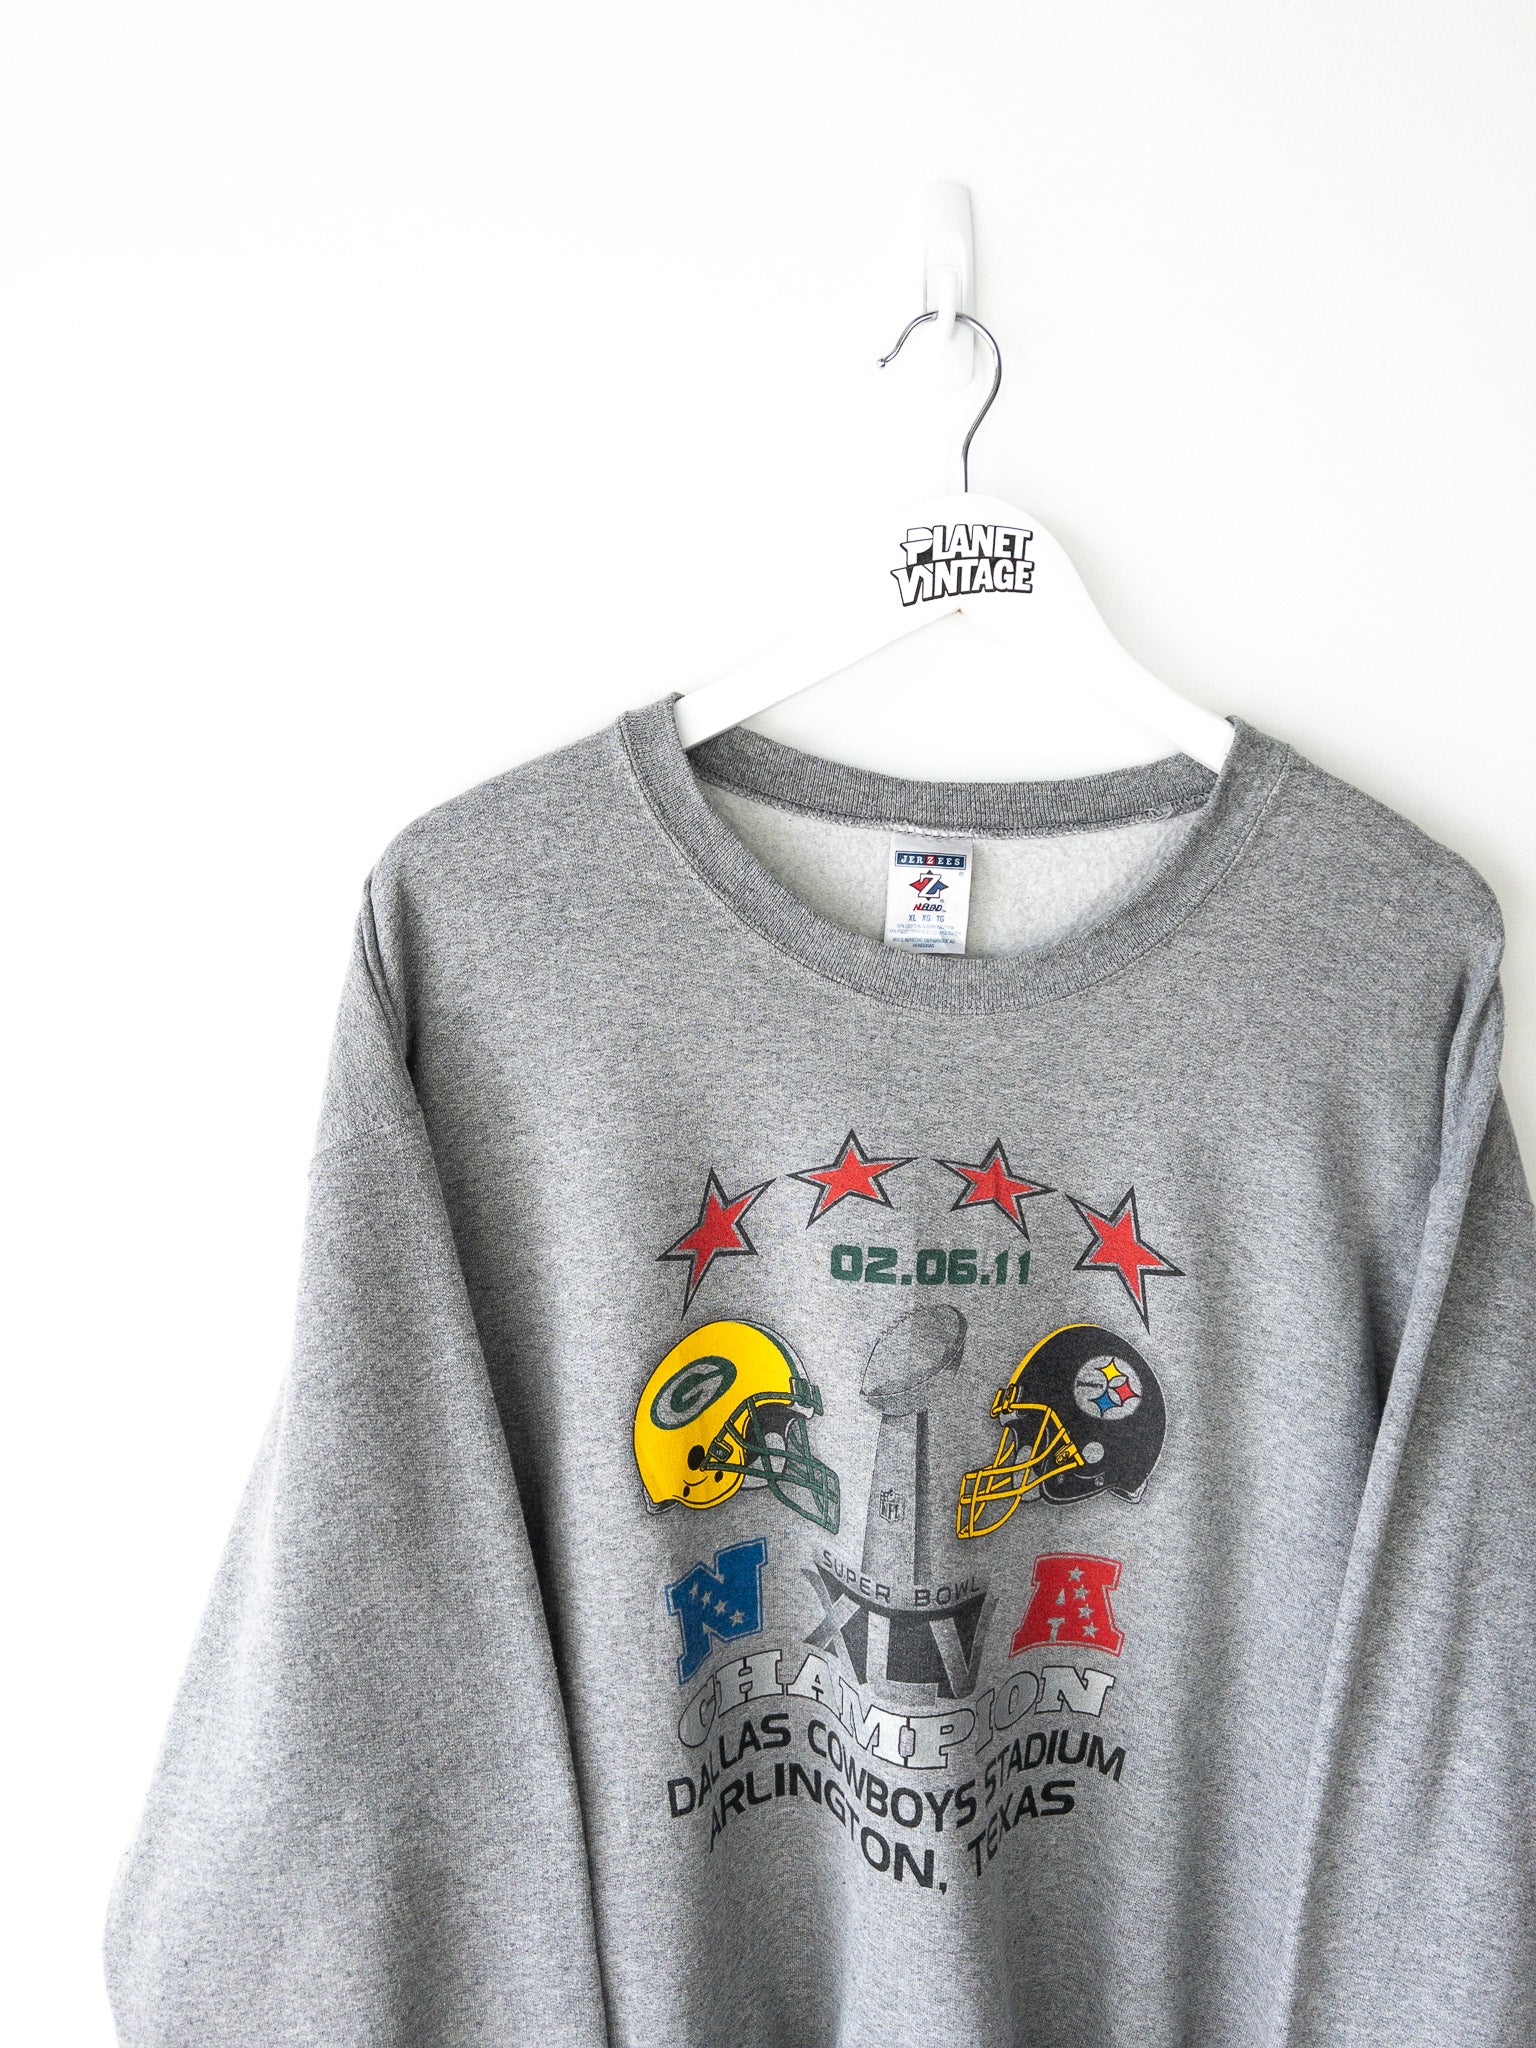 Vintage Packers vs Steelers Super Bowl Sweatshirt (XL)